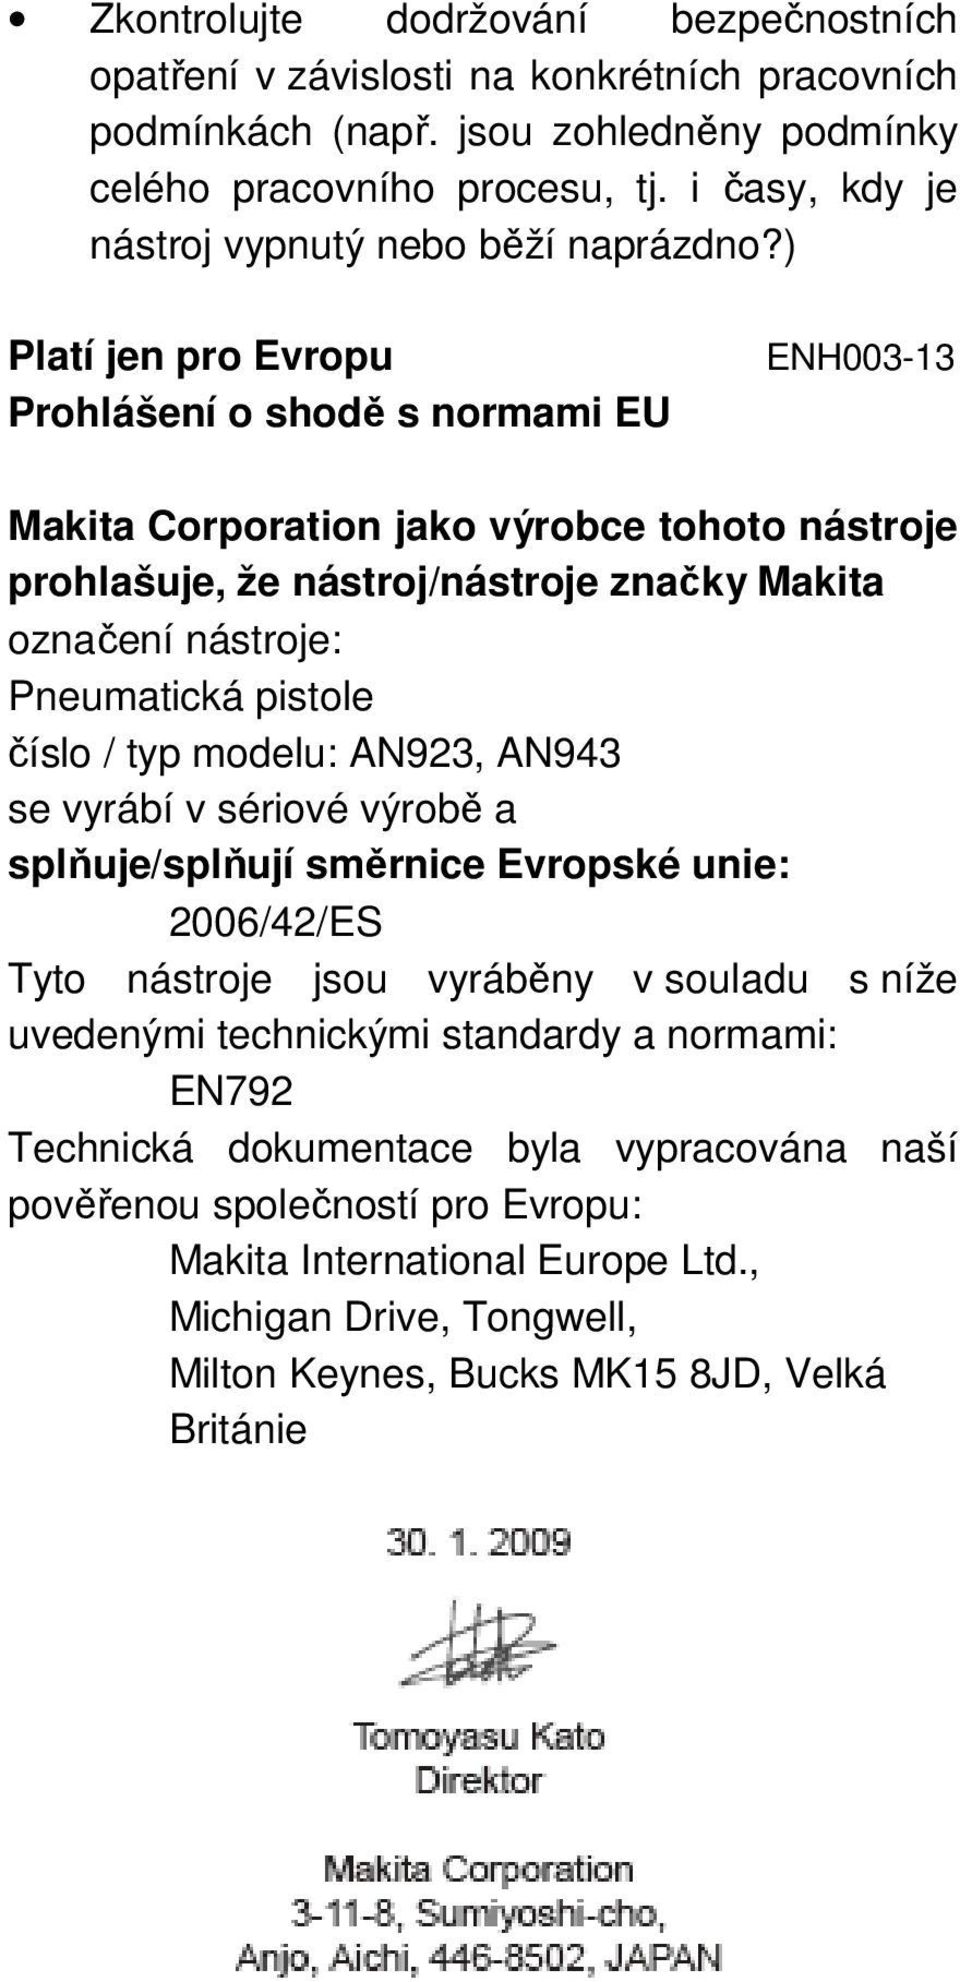 ) Platí jen pro Evropu Prohlášení o shodě s normami EU ENH003-13 Makita Corporation jako výrobce tohoto nástroje prohlašuje, že nástroj/nástroje značky Makita označení nástroje: Pneumatická pistole